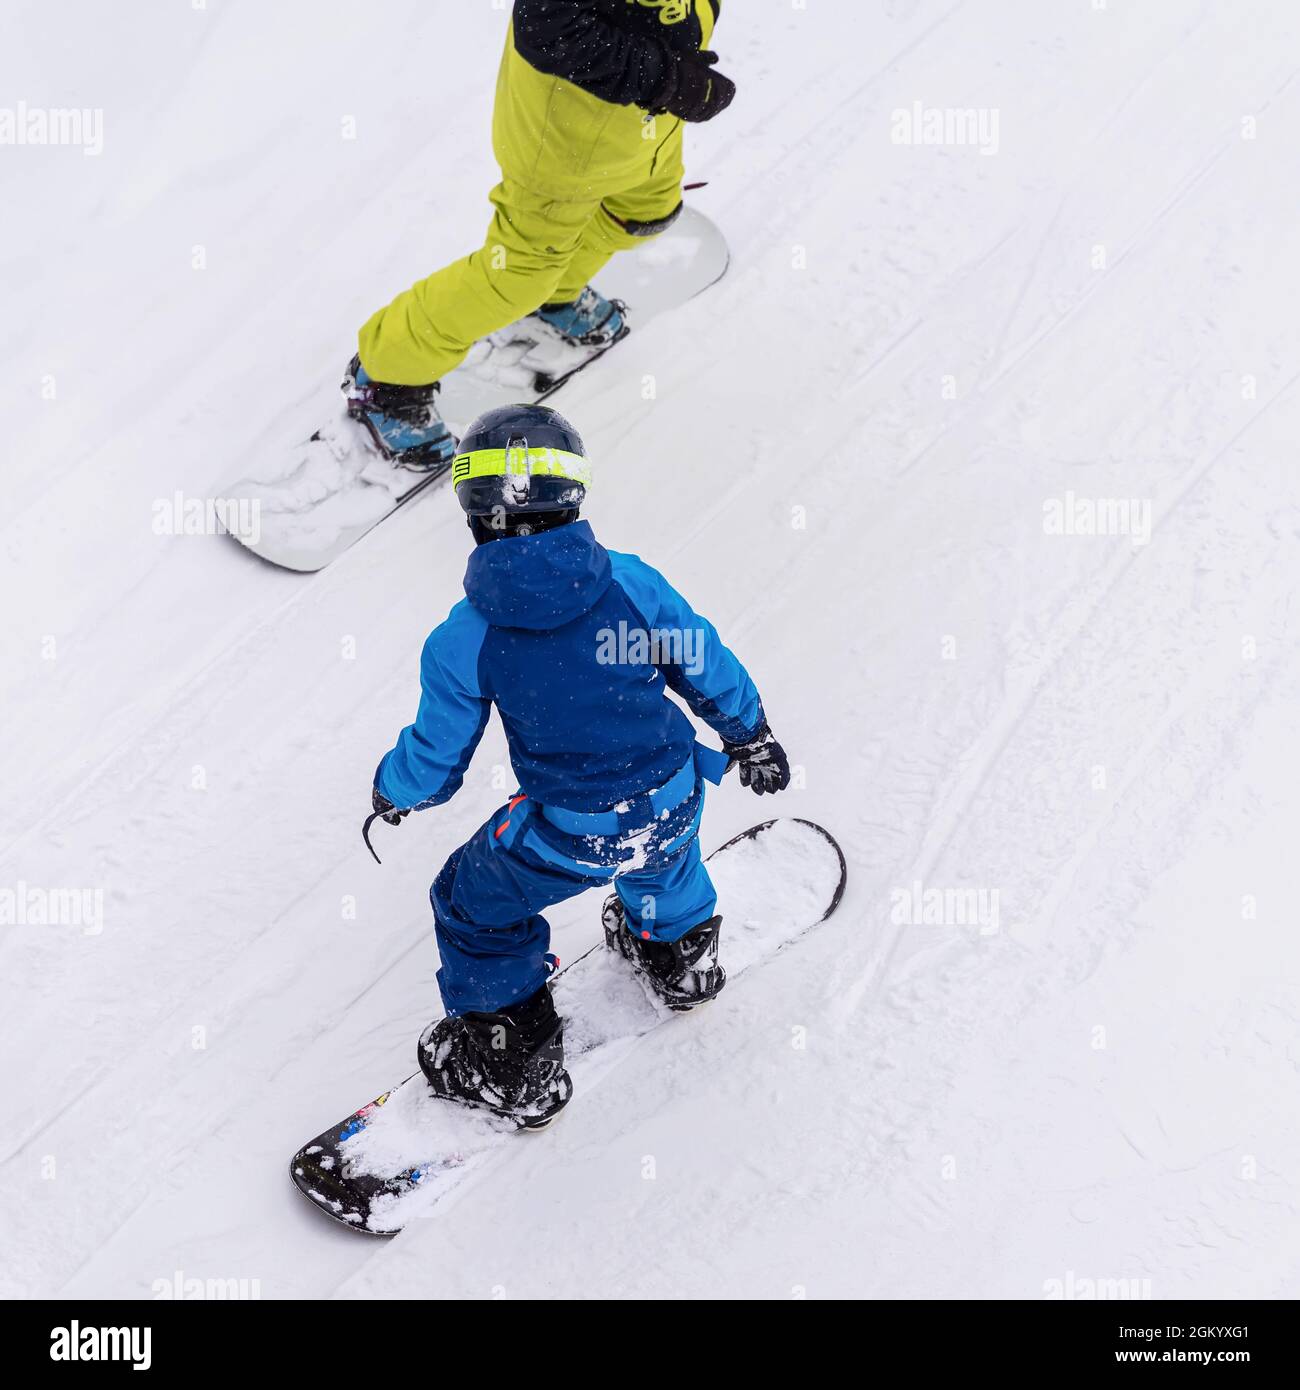 Vue arrière du père avec enfant sur le snowboard, la piste de ski. Loisirs d'hiver, style de vie sportif, entraînement au ski et vacances familiales en plein air Banque D'Images